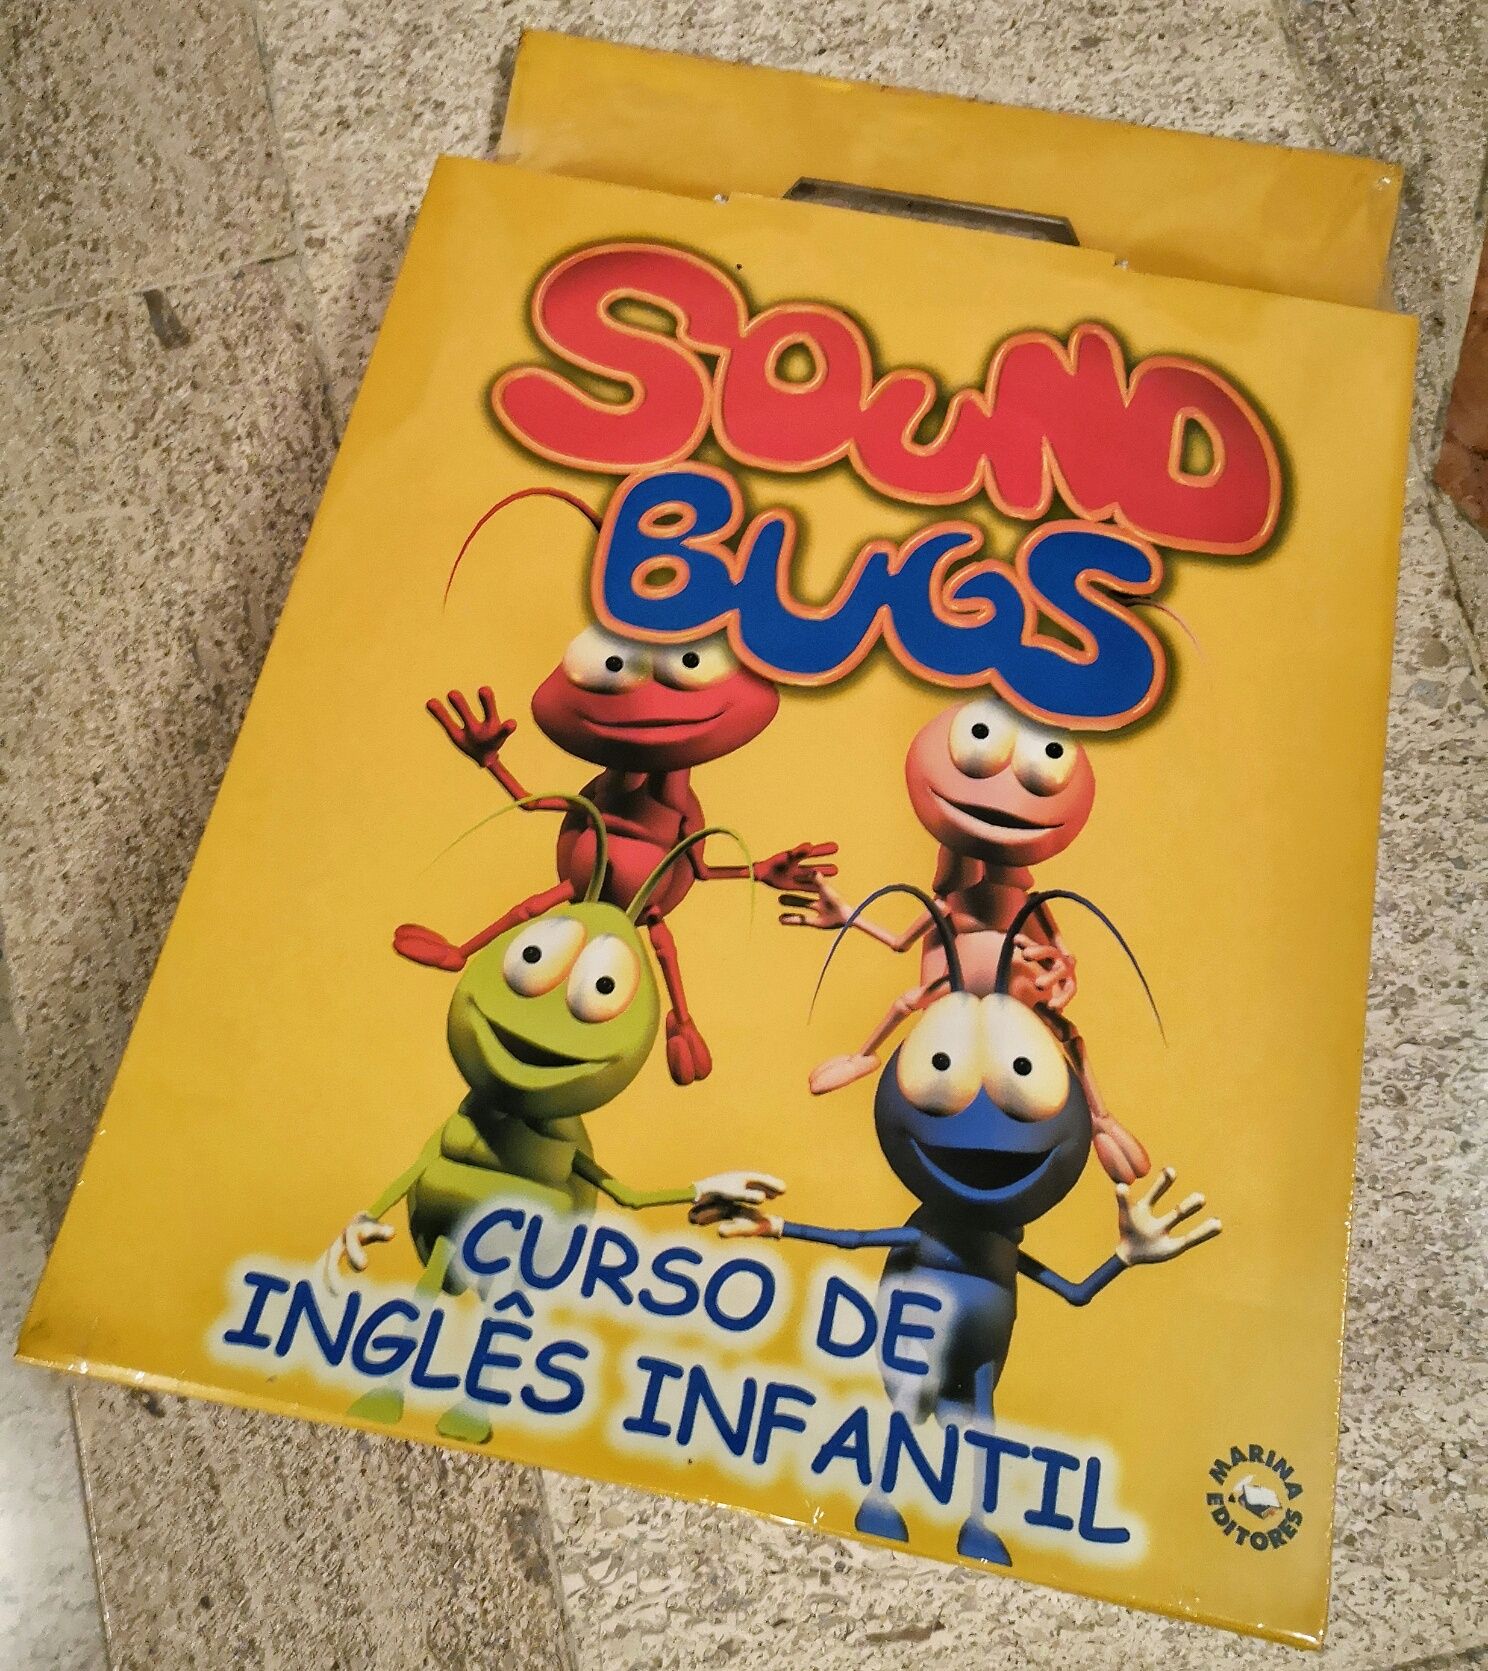 Sound Bugs - Curso infantil de inglês, partir dos dois anos - NOVO